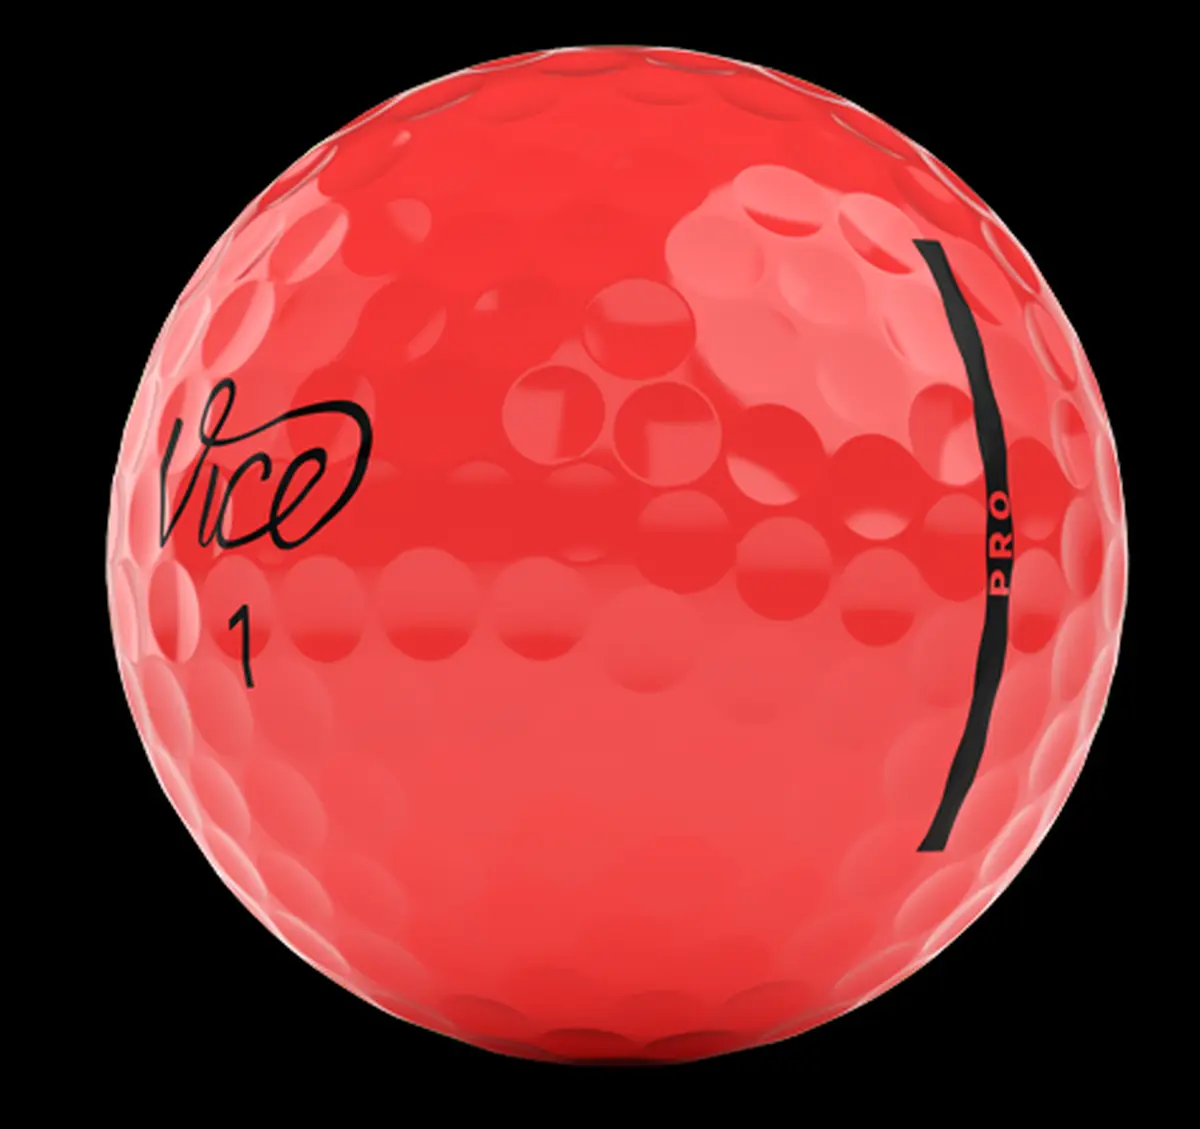 Vice Pro Neon Red je prémiový třívrstvý golfový míček z řady Vice Pro. Vyznačuje se svým pláštěm využívajícím Cast Uretan technologii, která přináší možnost maximalizovat hráčův výkon. Pět barevných variant má maximální výkonnostní parametry.